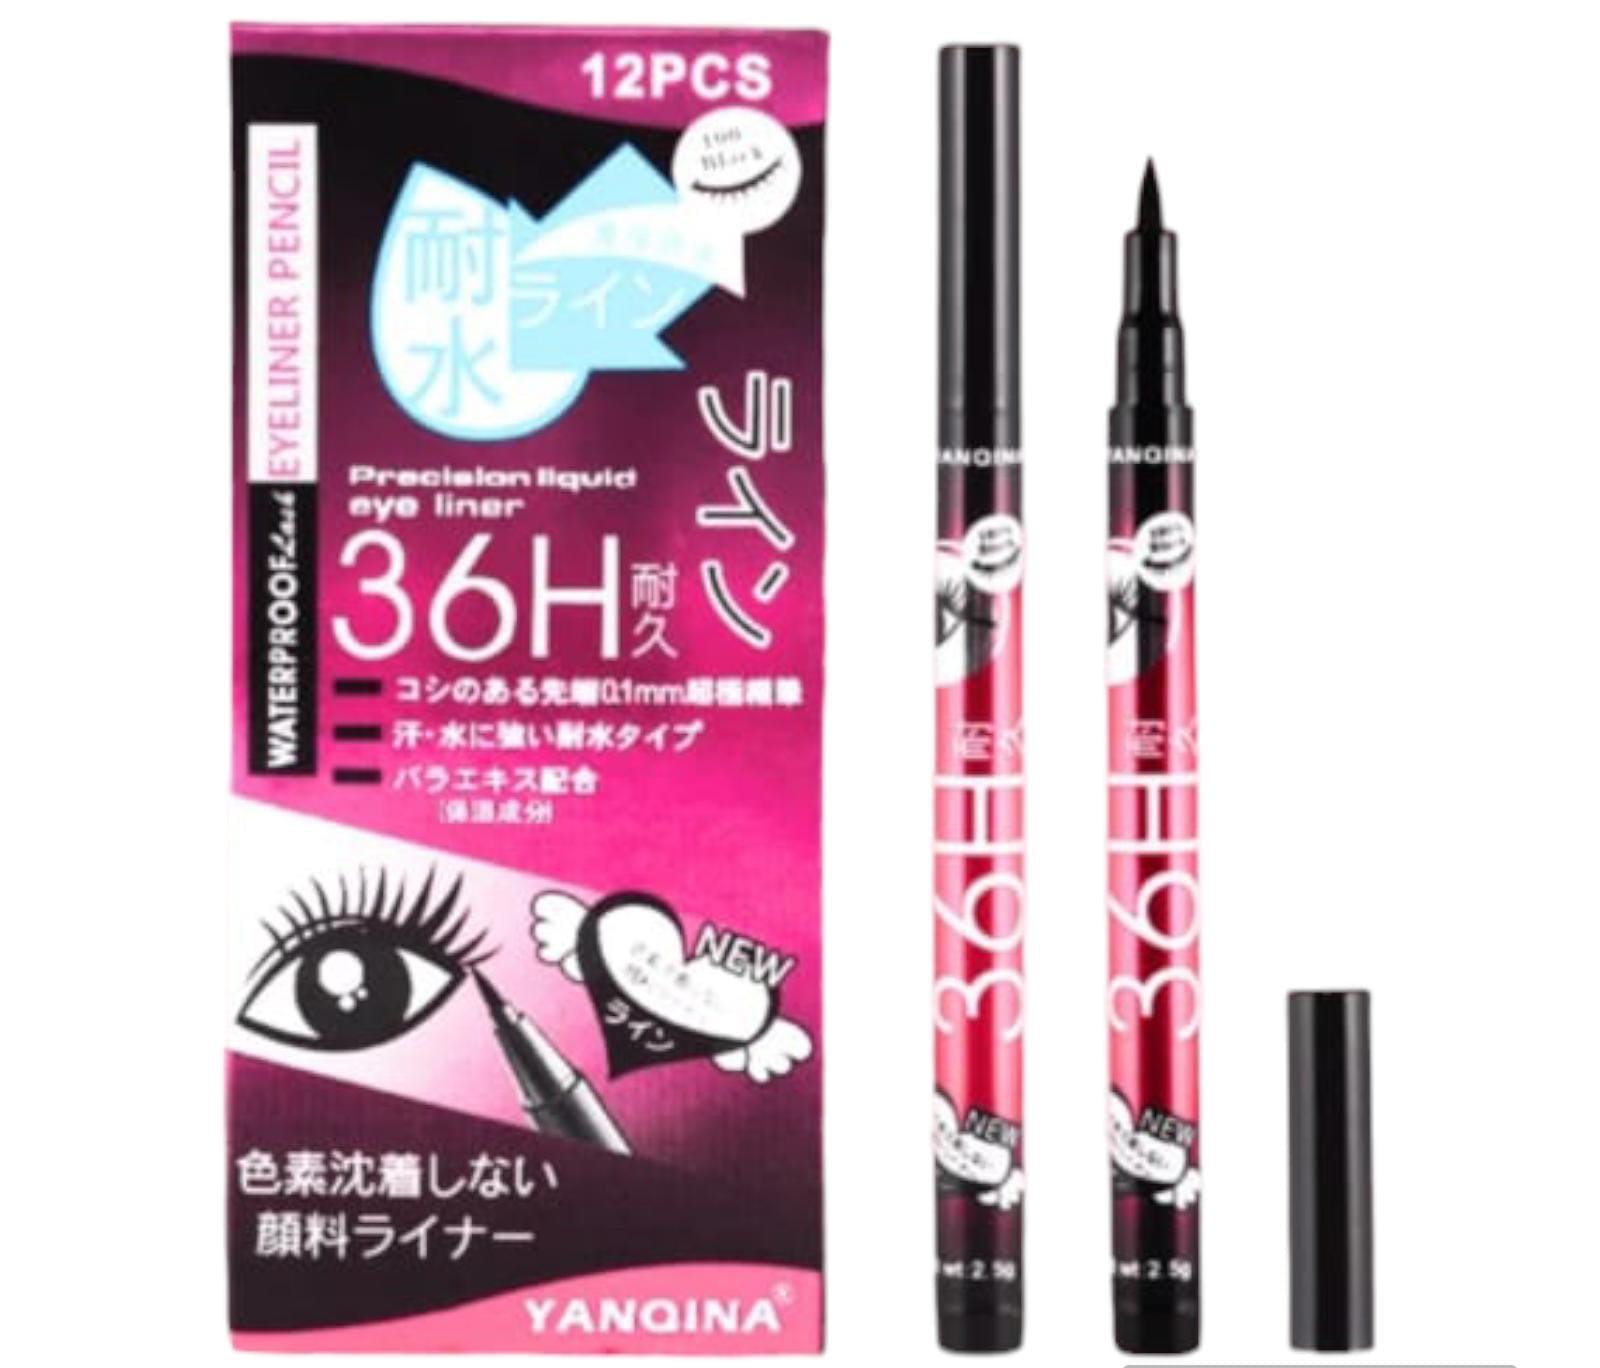 Kiss Beauty Sketch Eyeliner Pen